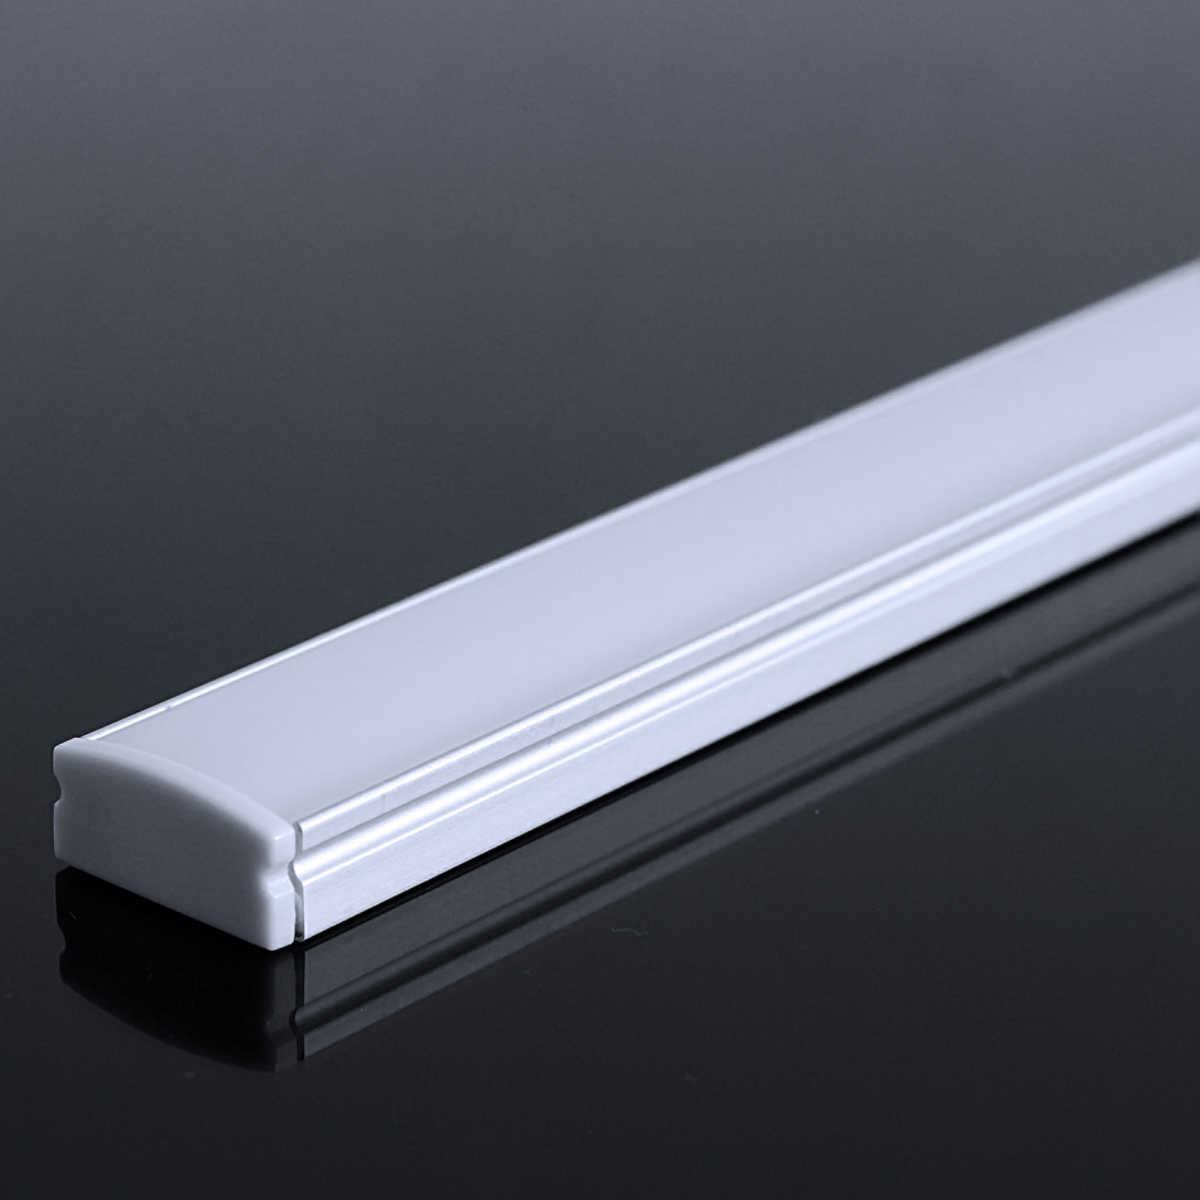 LED Flachprofil "Slim-Line" | Abdeckung diffus | Zuschnitt auf 48cm |